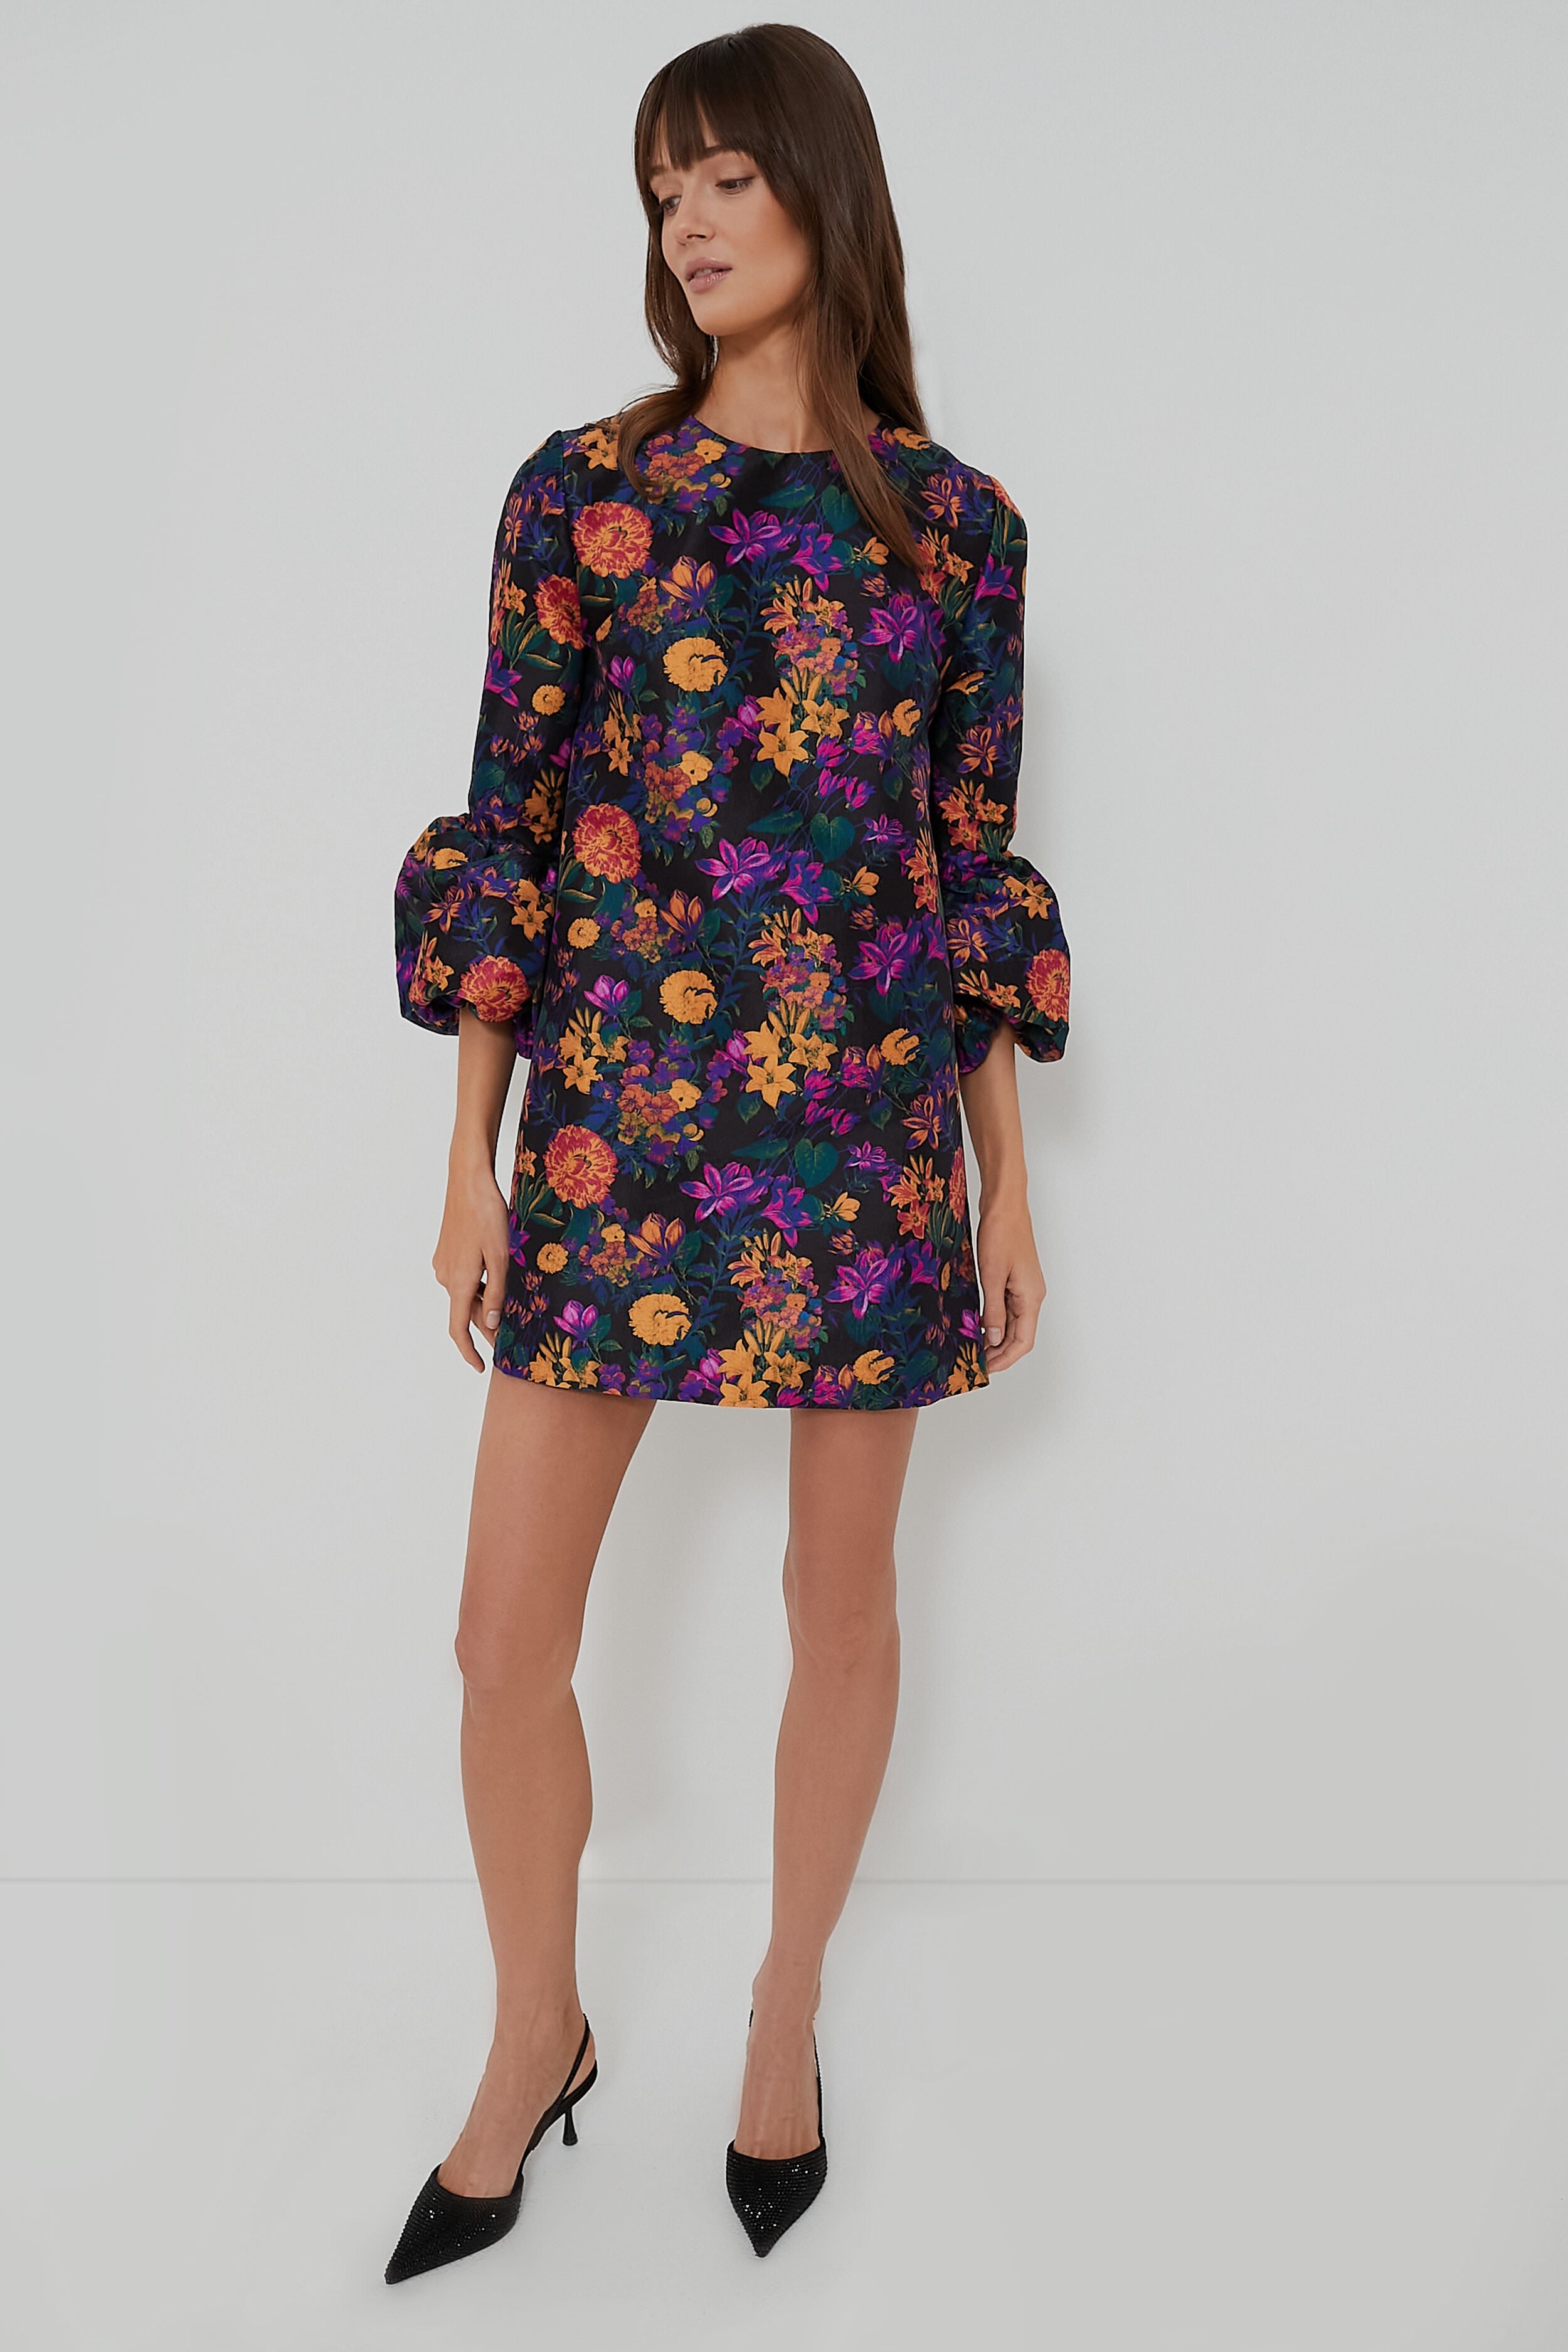 Orange Lillies Florence Dress | KIKA VARGAS